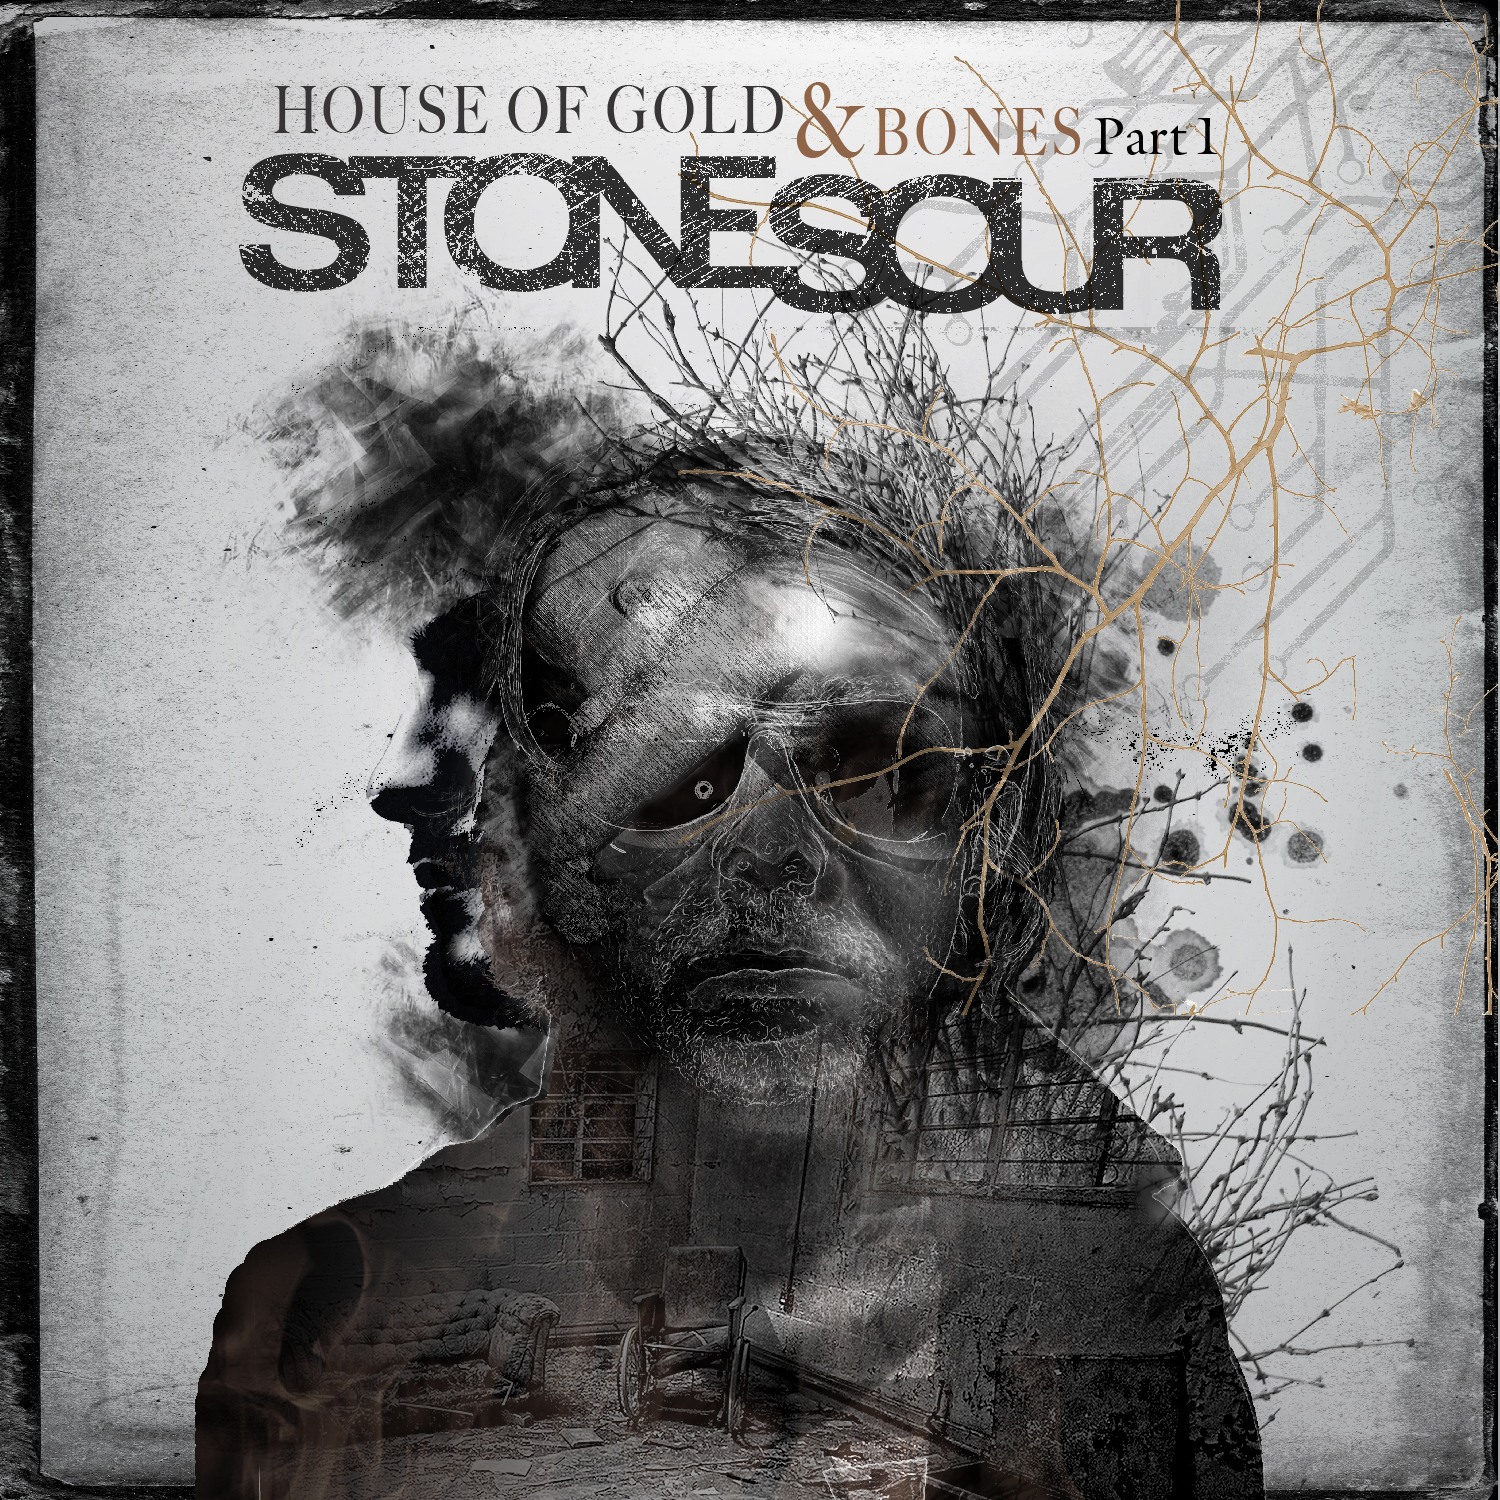 Stone Sour - House of Gold & Bones Part 1 (2012) Album Info